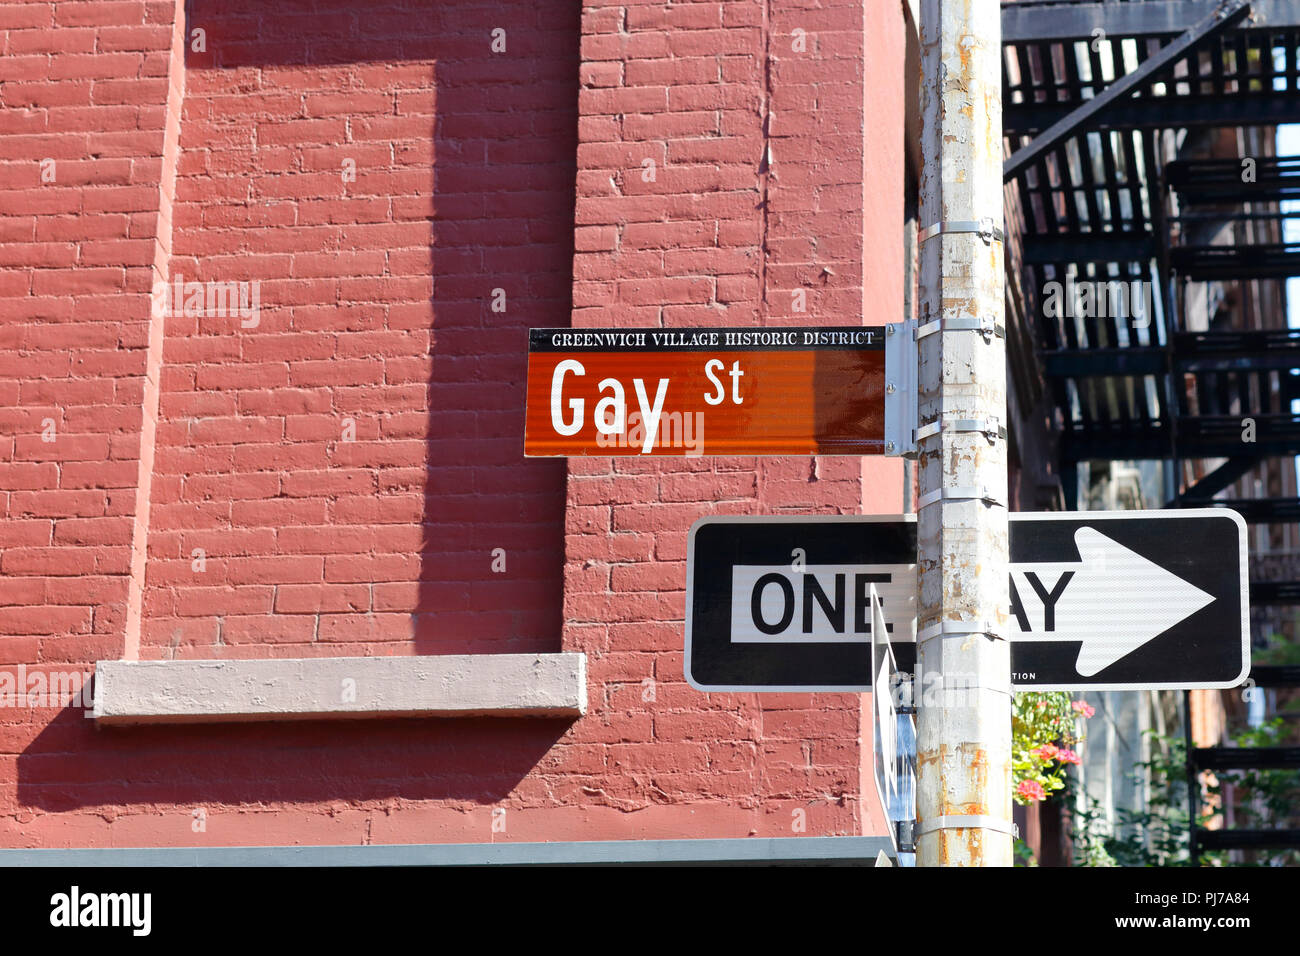 Gay Street street sign, New York, NY. Stock Photo